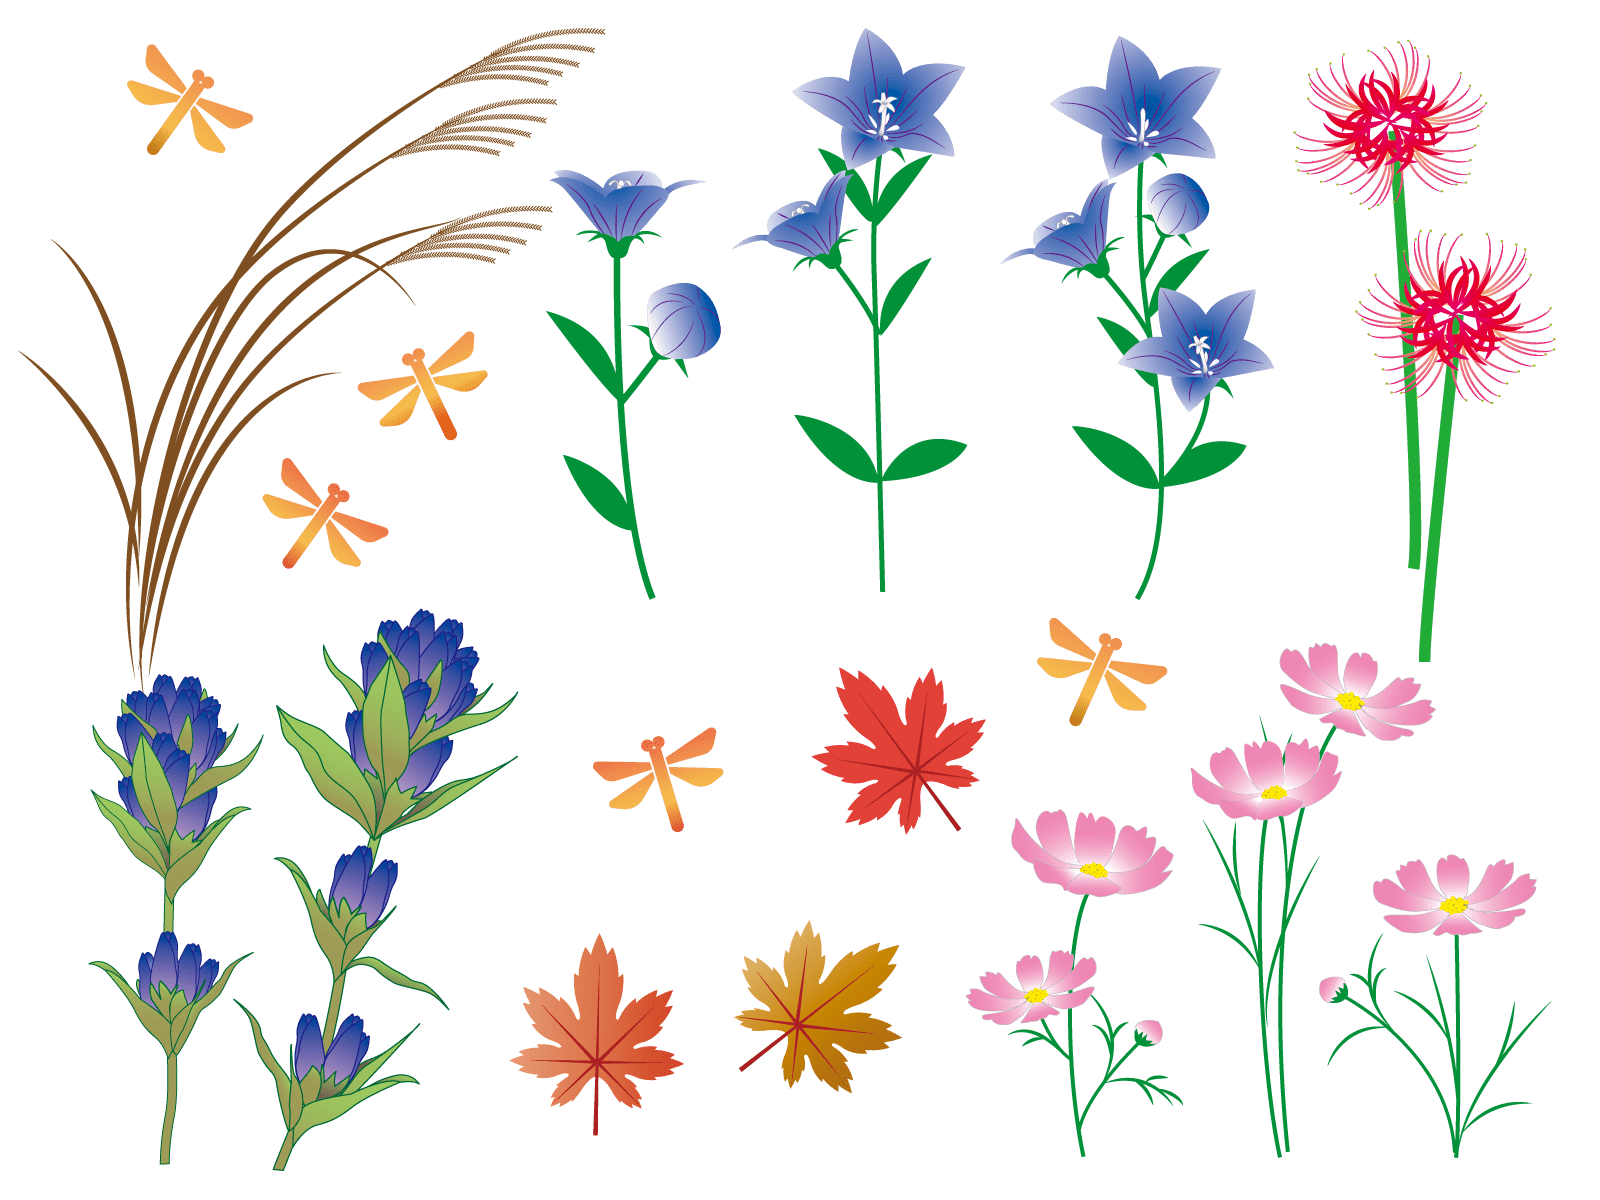 無料 かわいい秋の花 コスモス 菊 彼岸花 桔梗等 のイラスト かわいい無料イラスト イラストの描き方